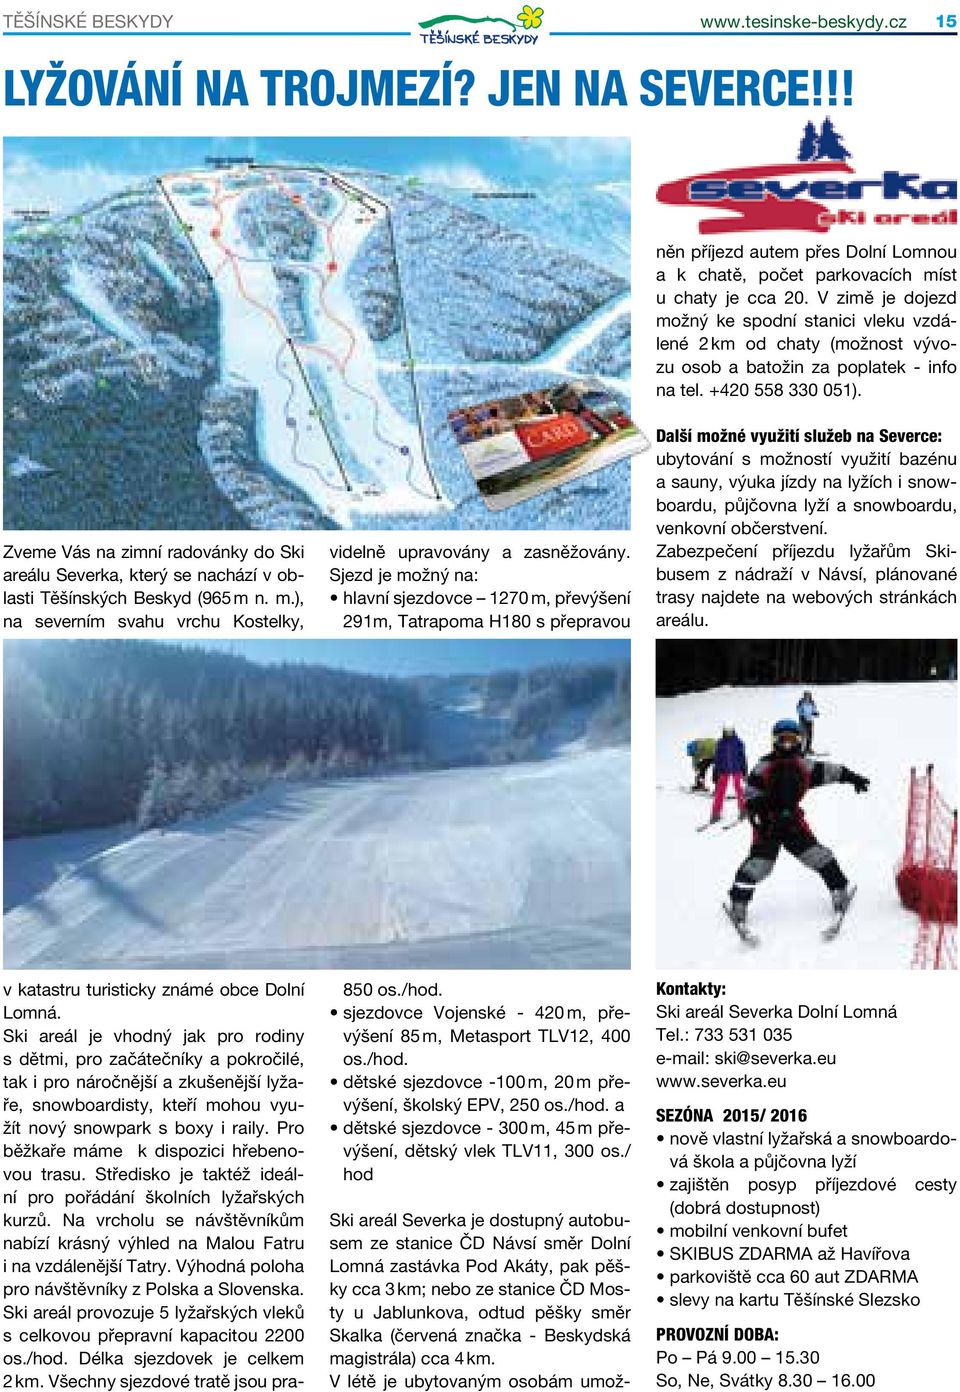 Zveme Vás na zimní radovánky do Ski areálu Severka, který se nachází v oblasti Těšínských Beskyd (965 m n. m.), na severním svahu vrchu Kostelky, v katastru turisticky známé obce Dolní Lomná.